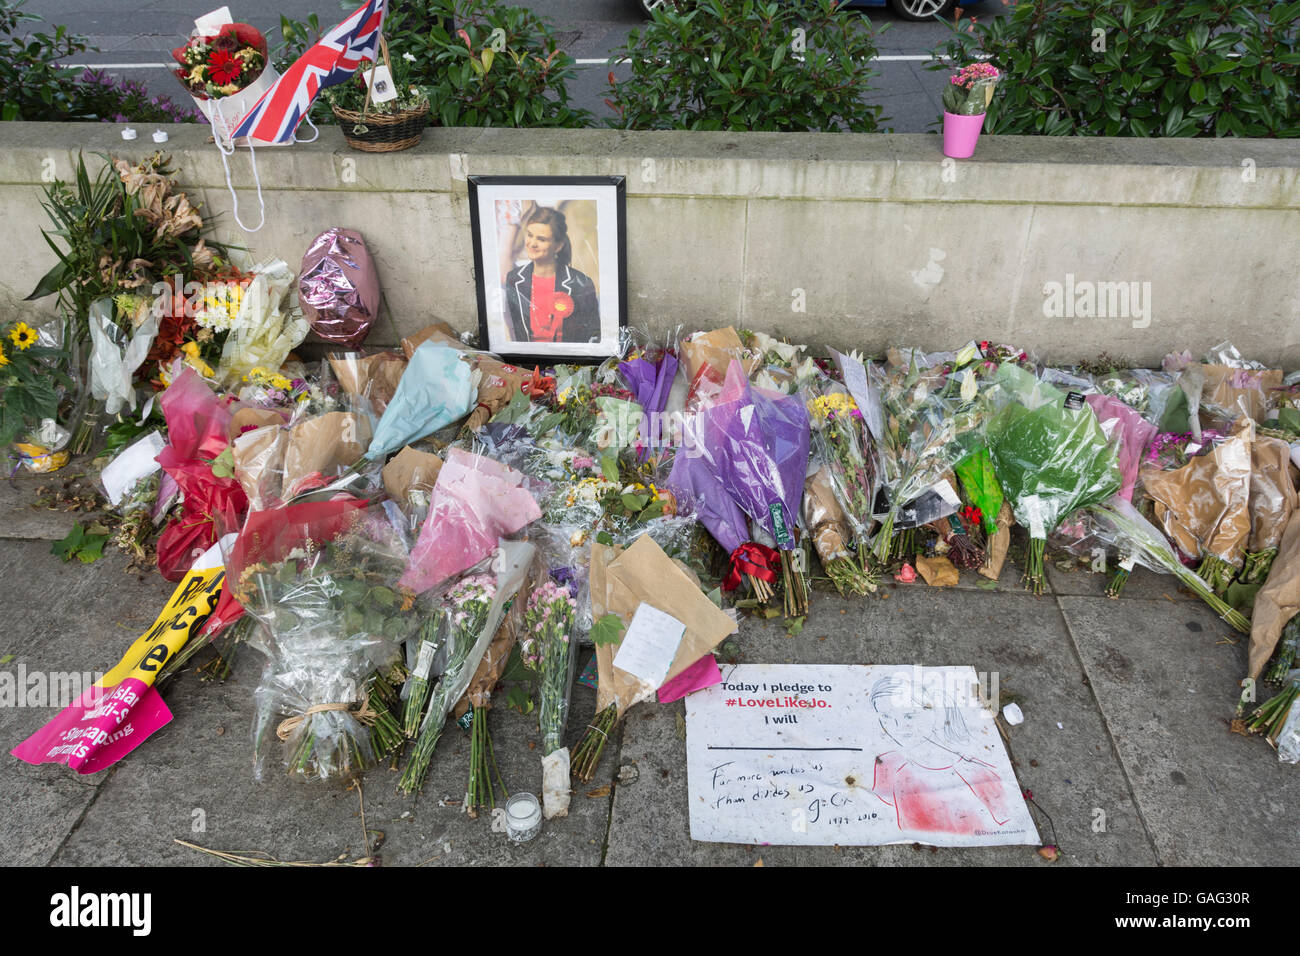 Tributs floraux et des souvenirs à Jo Cox dans Parliament Square, London, England, UK Banque D'Images